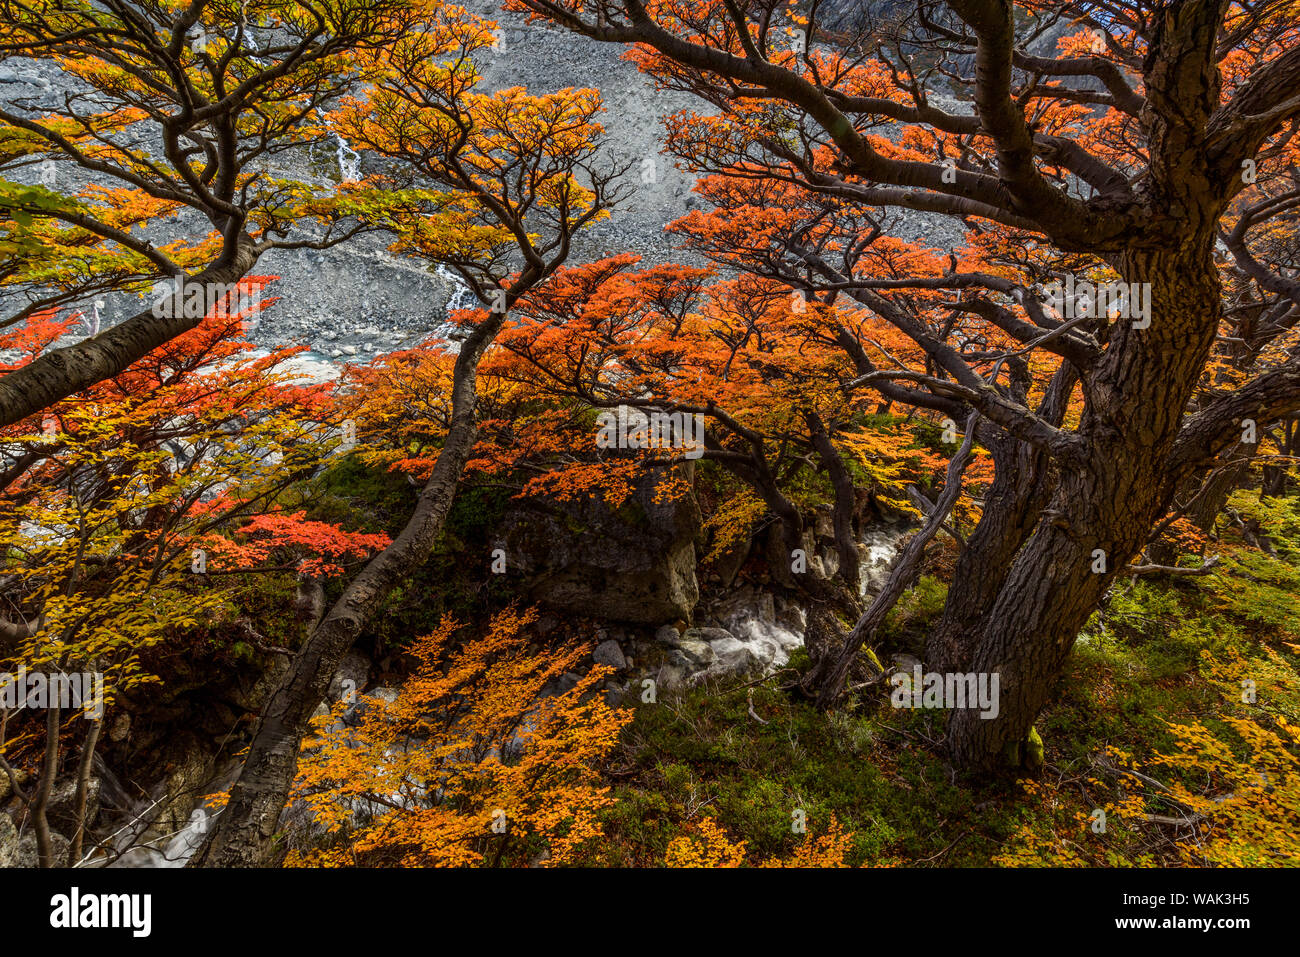 Argentina, parco nazionale Los Glaciares. Lenga faggi in autunno. Foto Stock